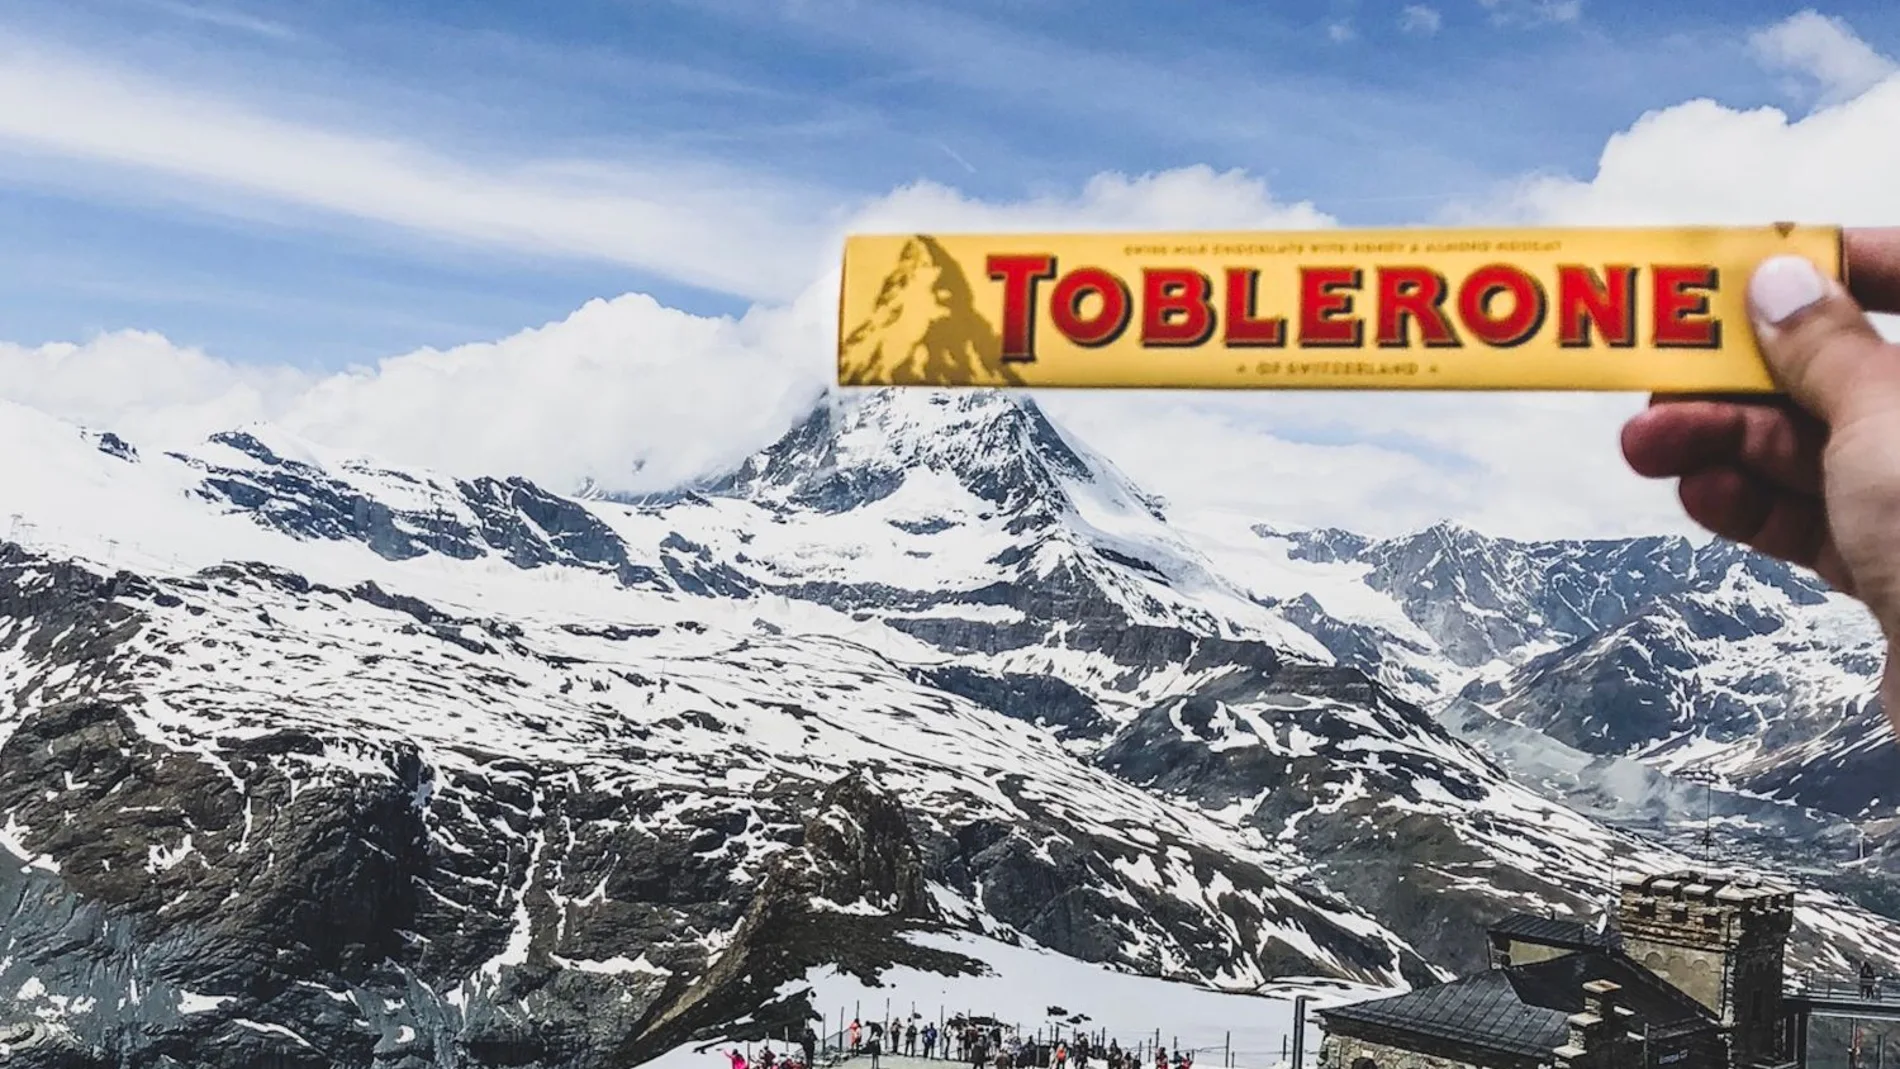 Toblerone, que comenzó a comercializarse hace 115 años en Suiza, se verá obligada por ley a dejar de usar el monte Cervino como logotipo de sus envases